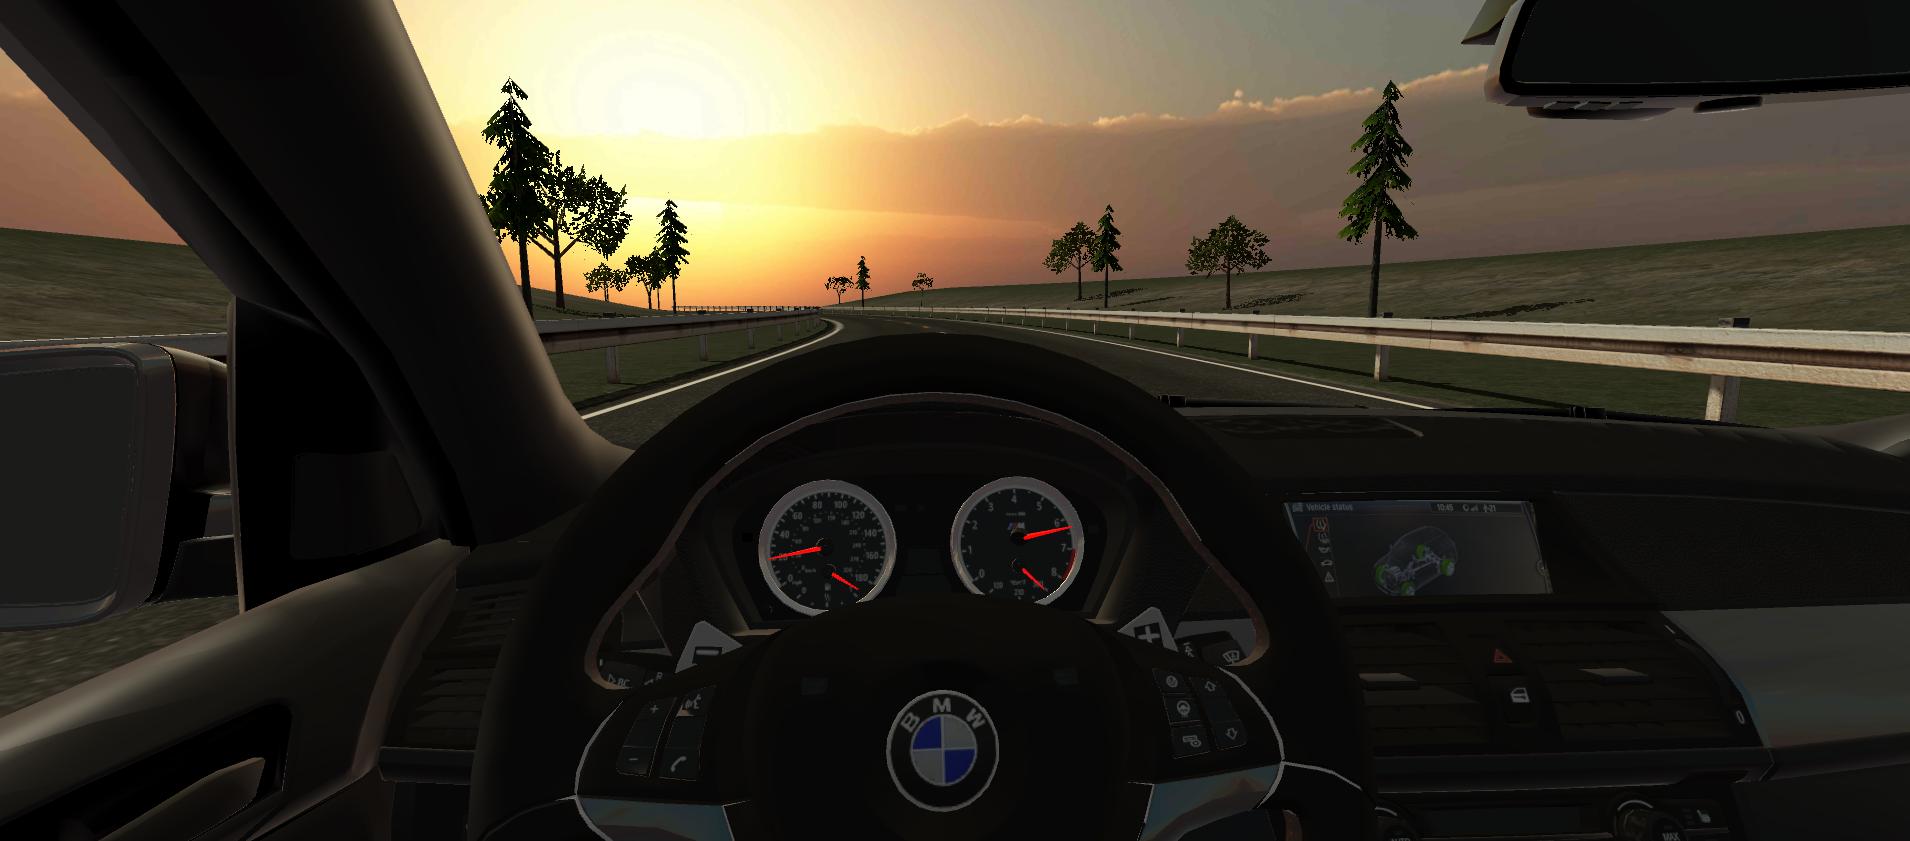 Drive Simulator. BMW m5 Driving Simulator - Android. Есть ли жена в игре Driver Simulator. Игры симуляторы гта